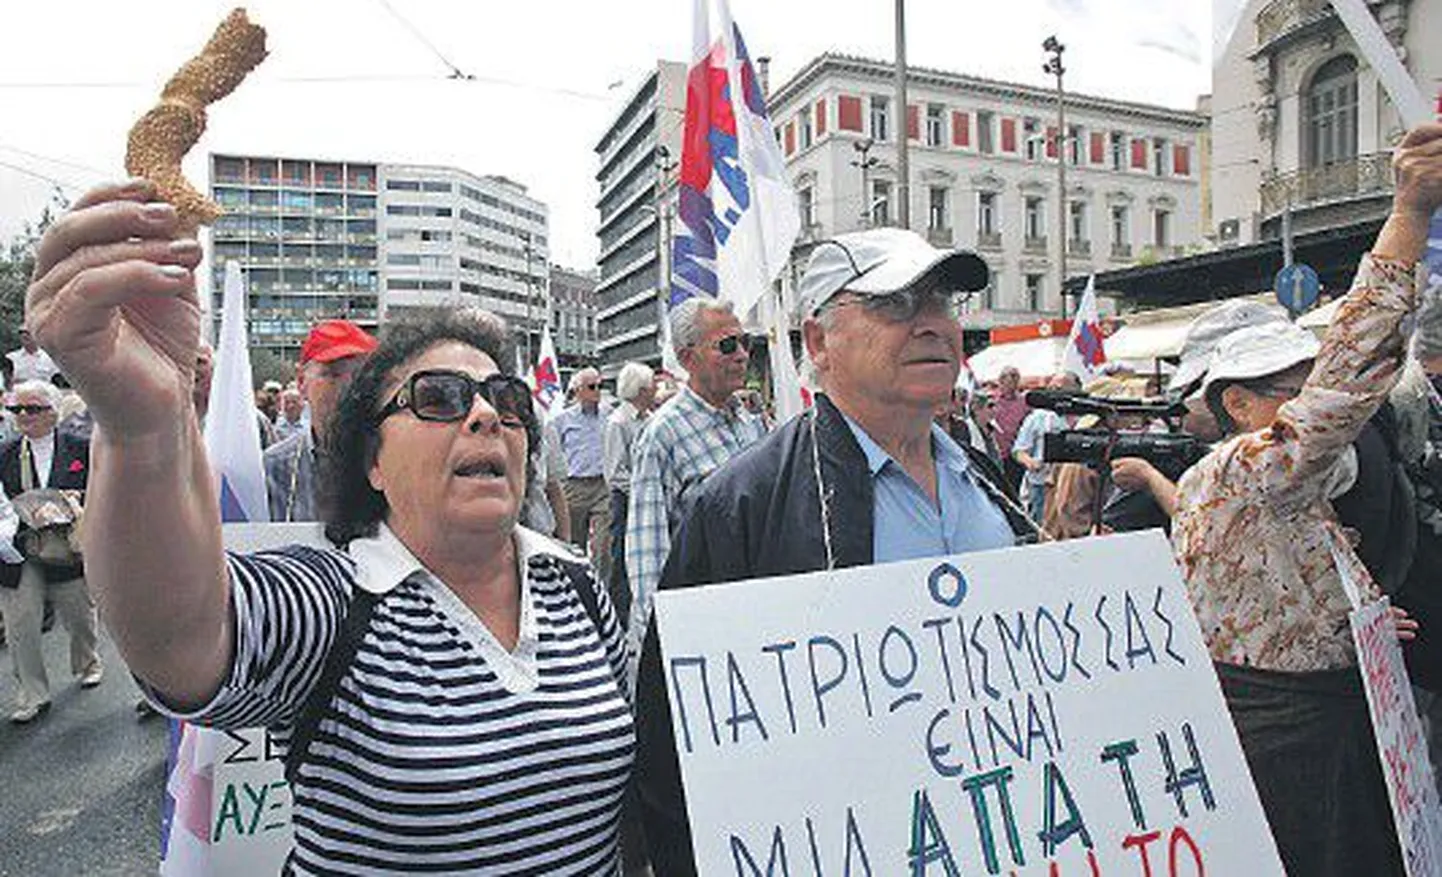 Вчера в столице Греции Афинах тысячи человек вновь протестовали против драконовских мер, проводимыми правительством в обмен на многомиллиардный кредит со стороны Евросоюза и Международного валютного фонда.